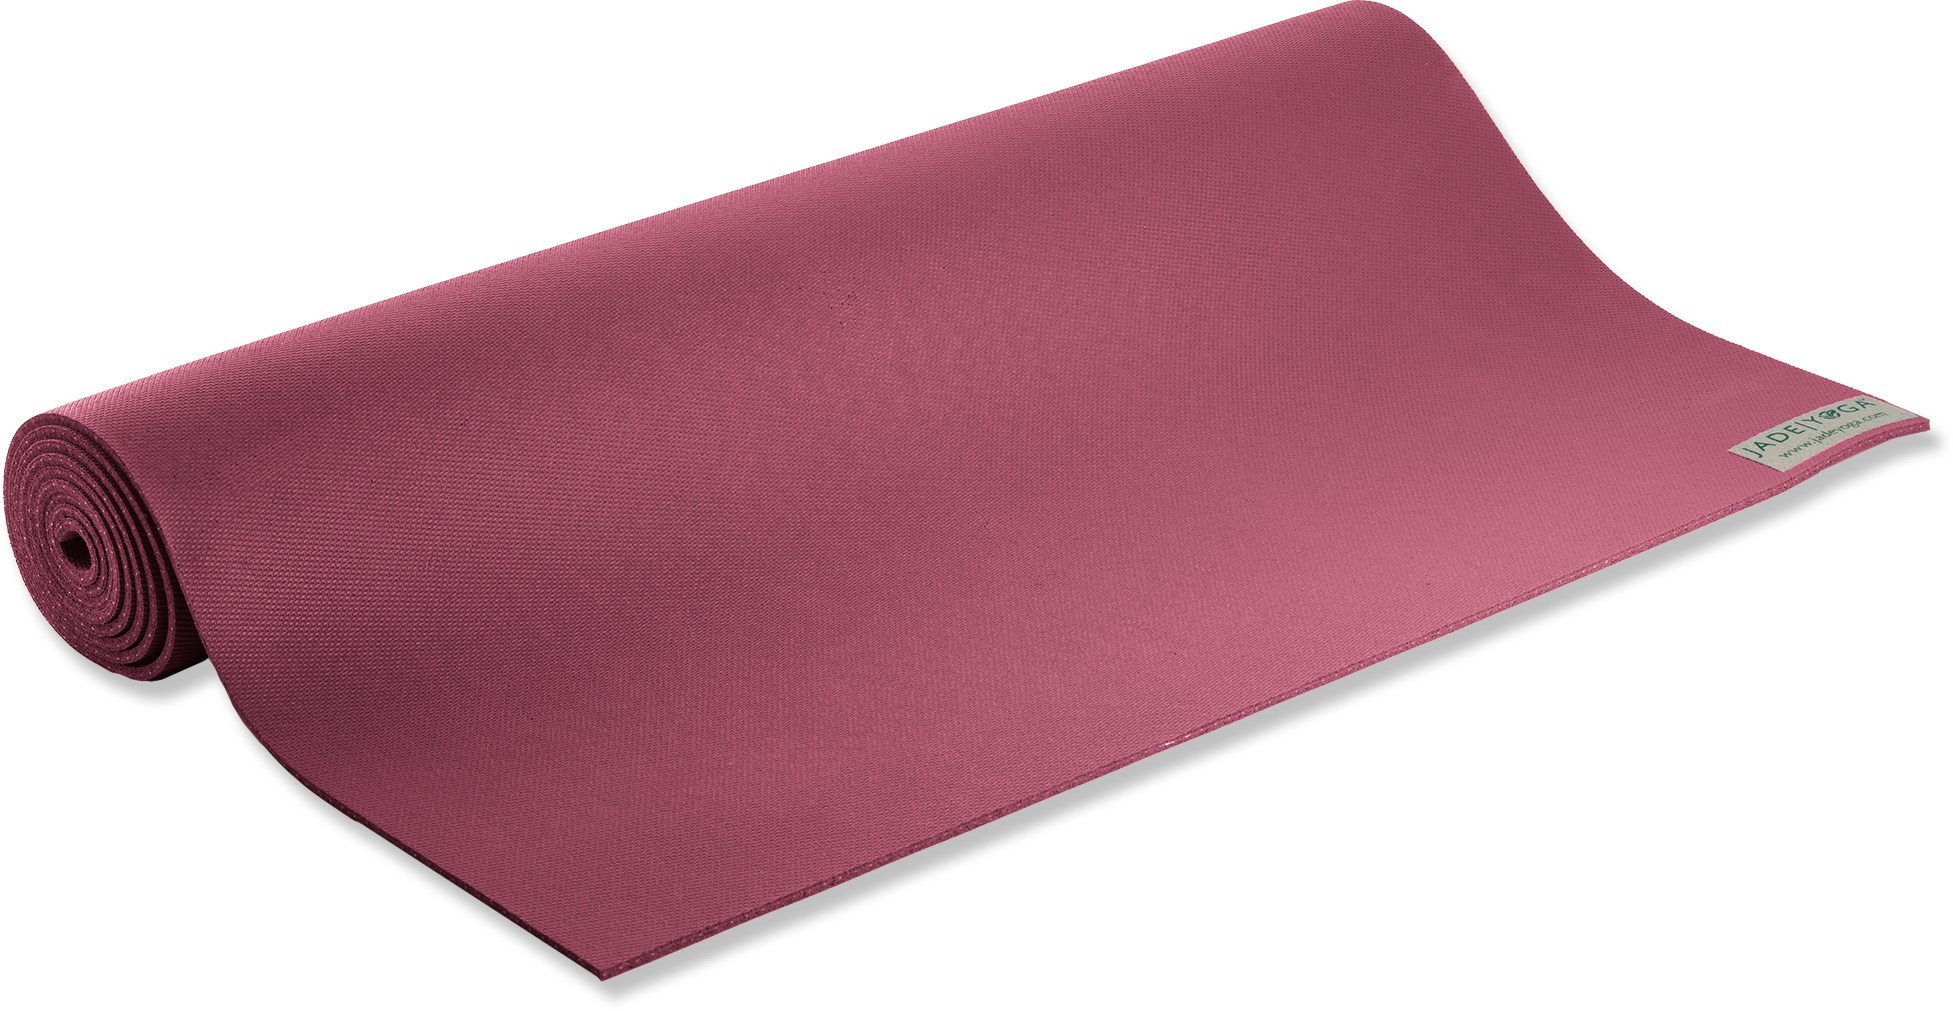 Профессиональный коврик для йоги Harmony Jade, фиолетовый